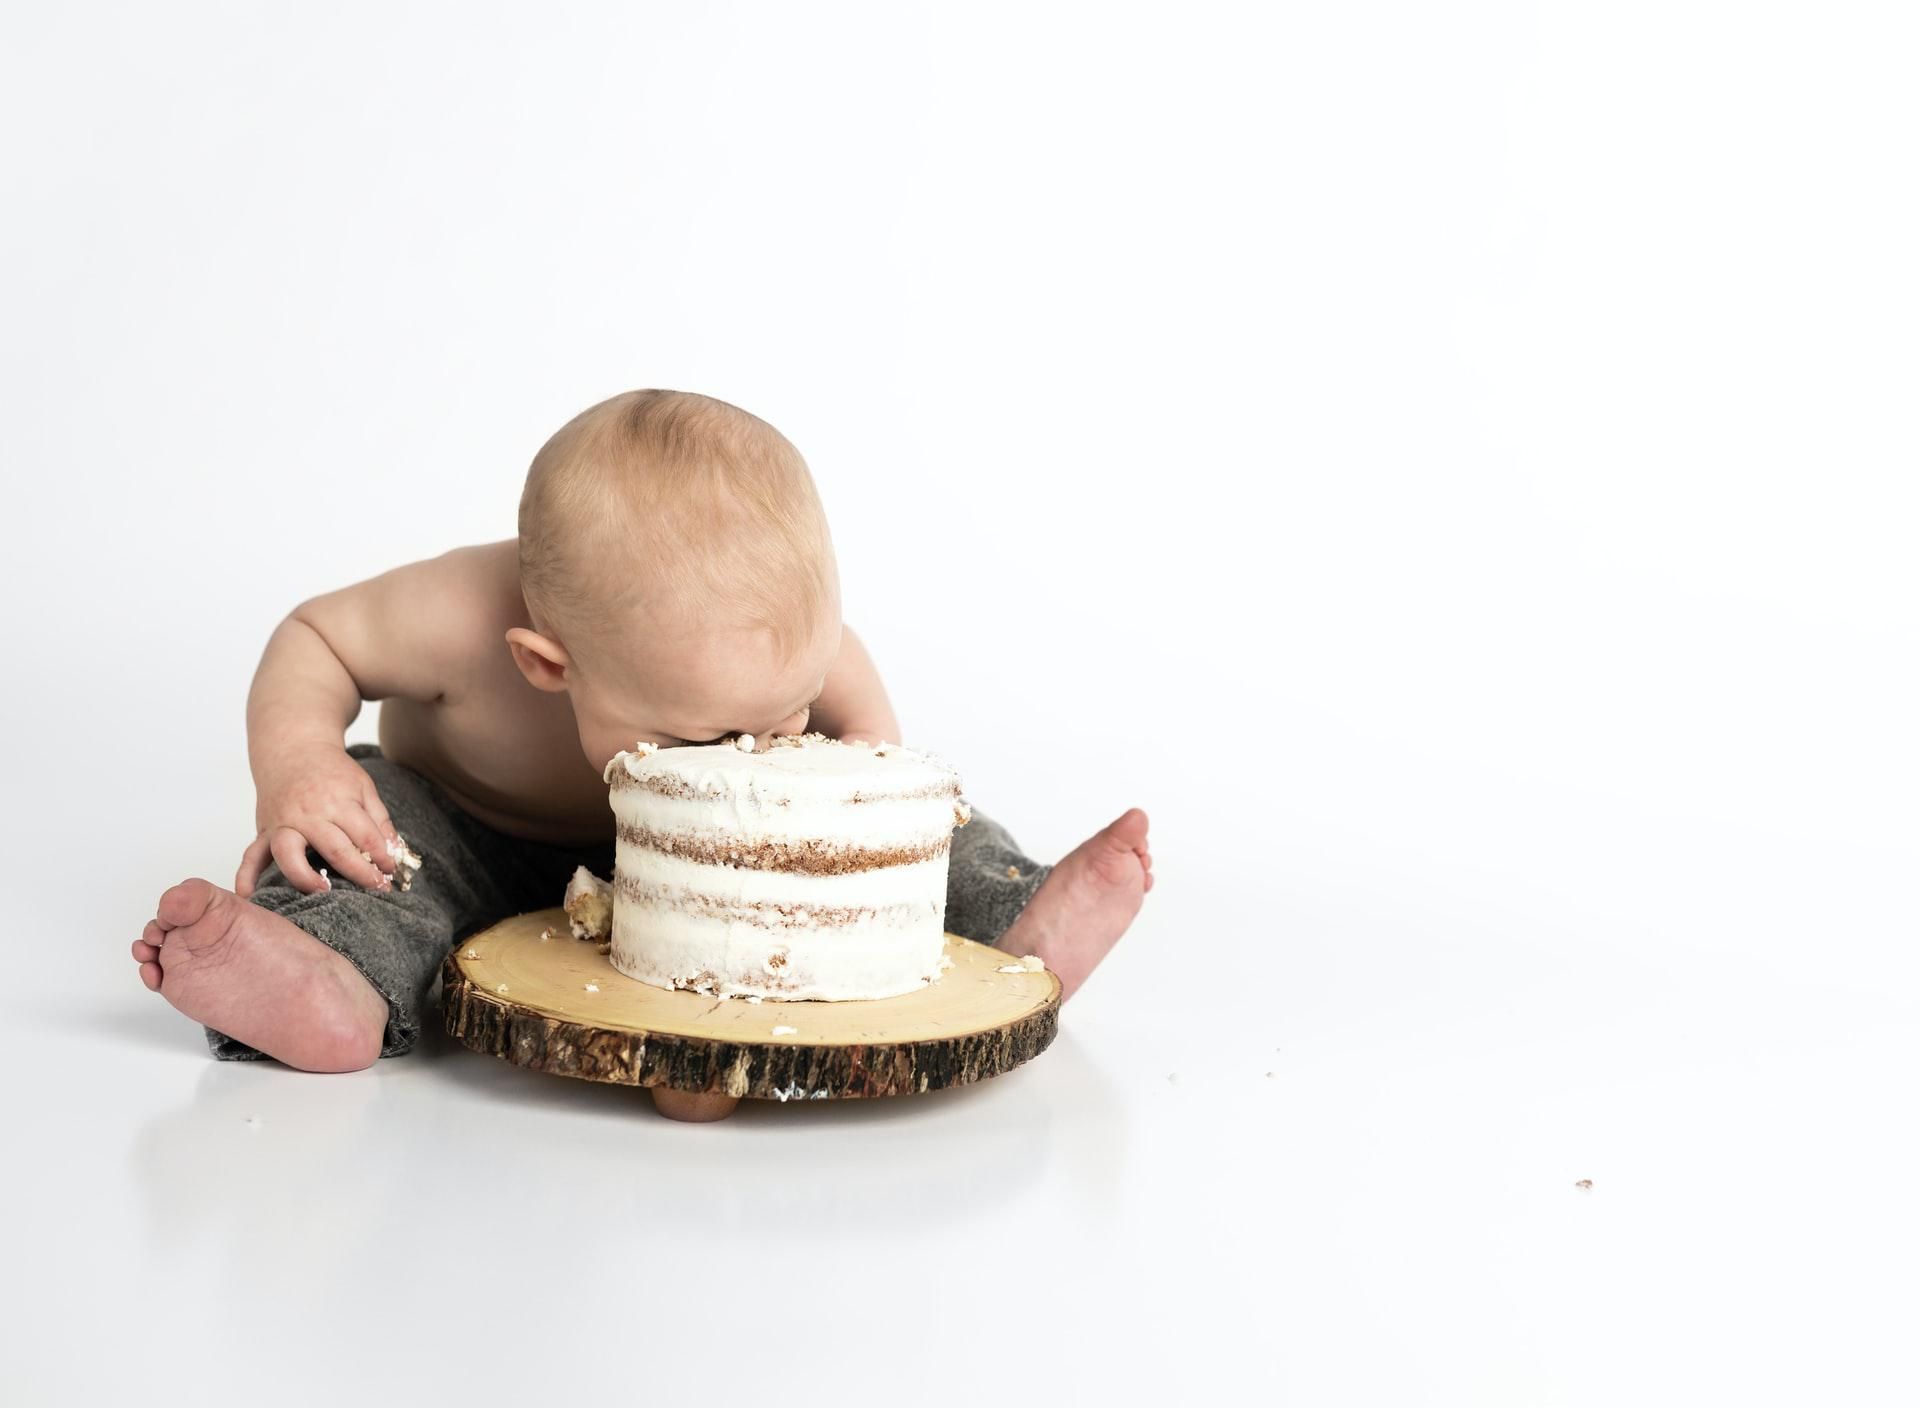 Fehér háttér előtt ülő kisbaba belefejel az előtte lévő tortába